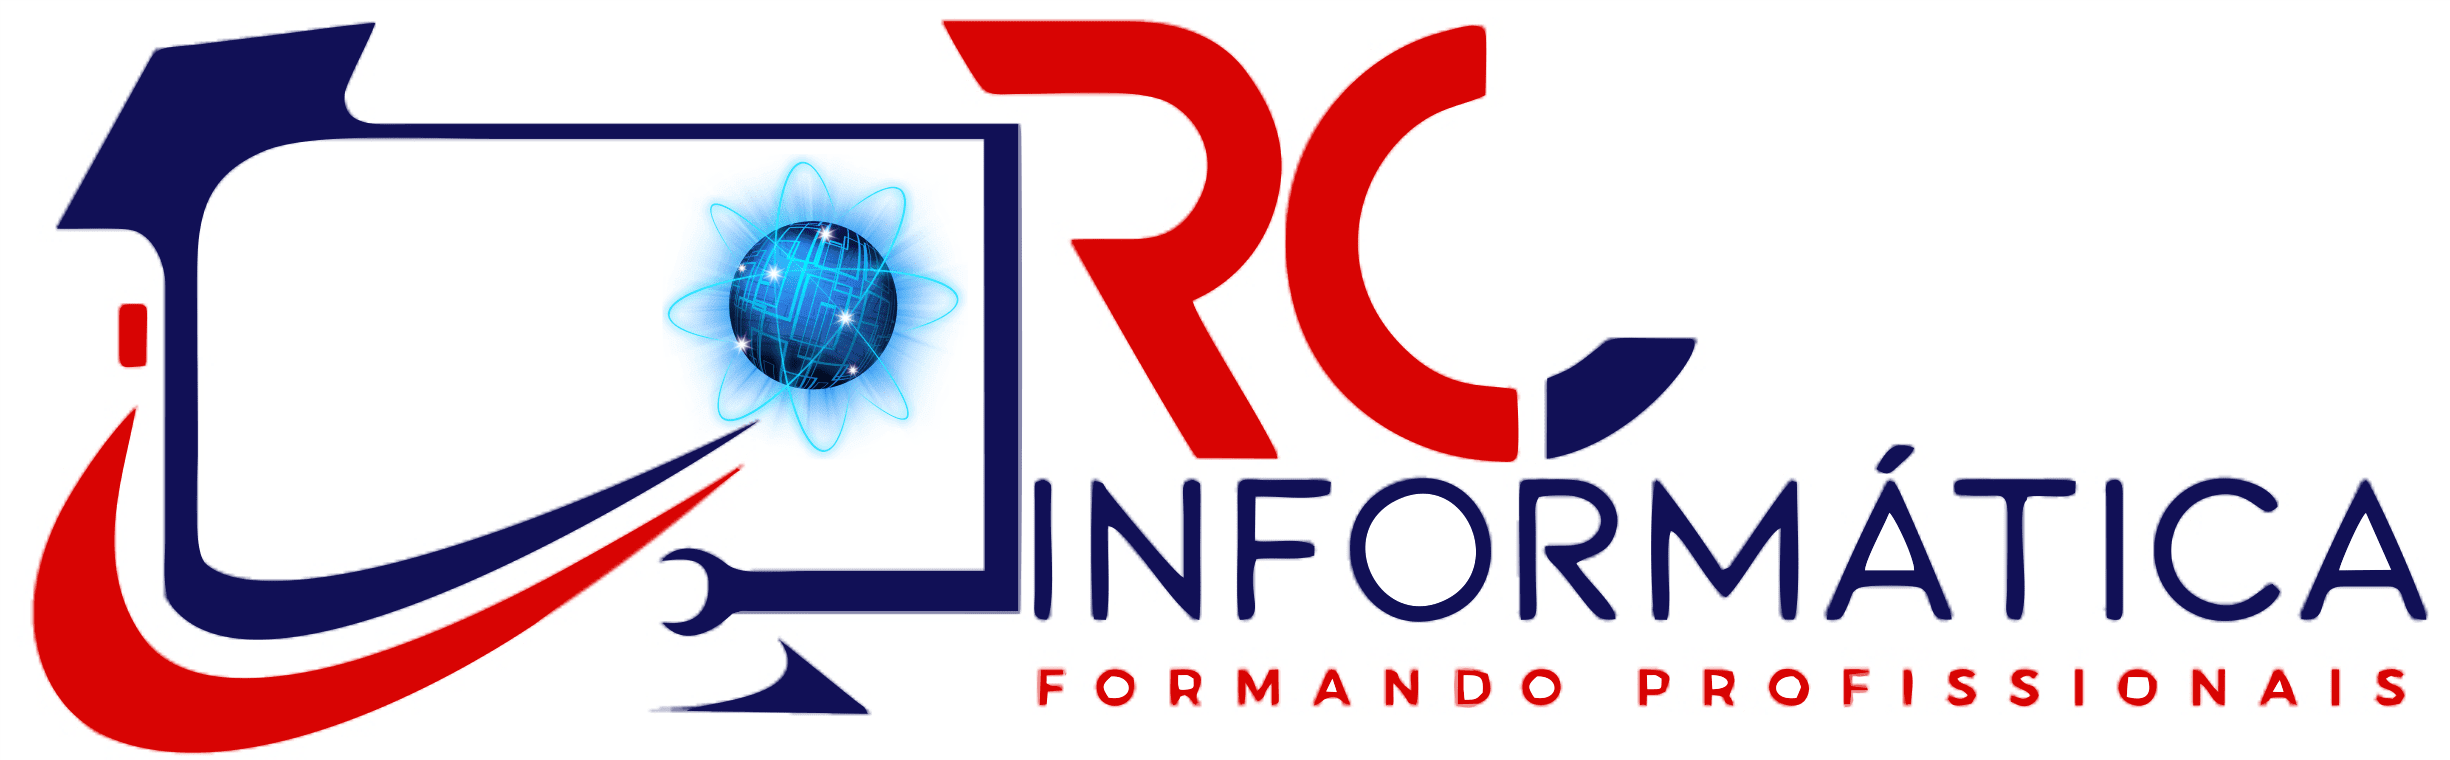 Rc Informática